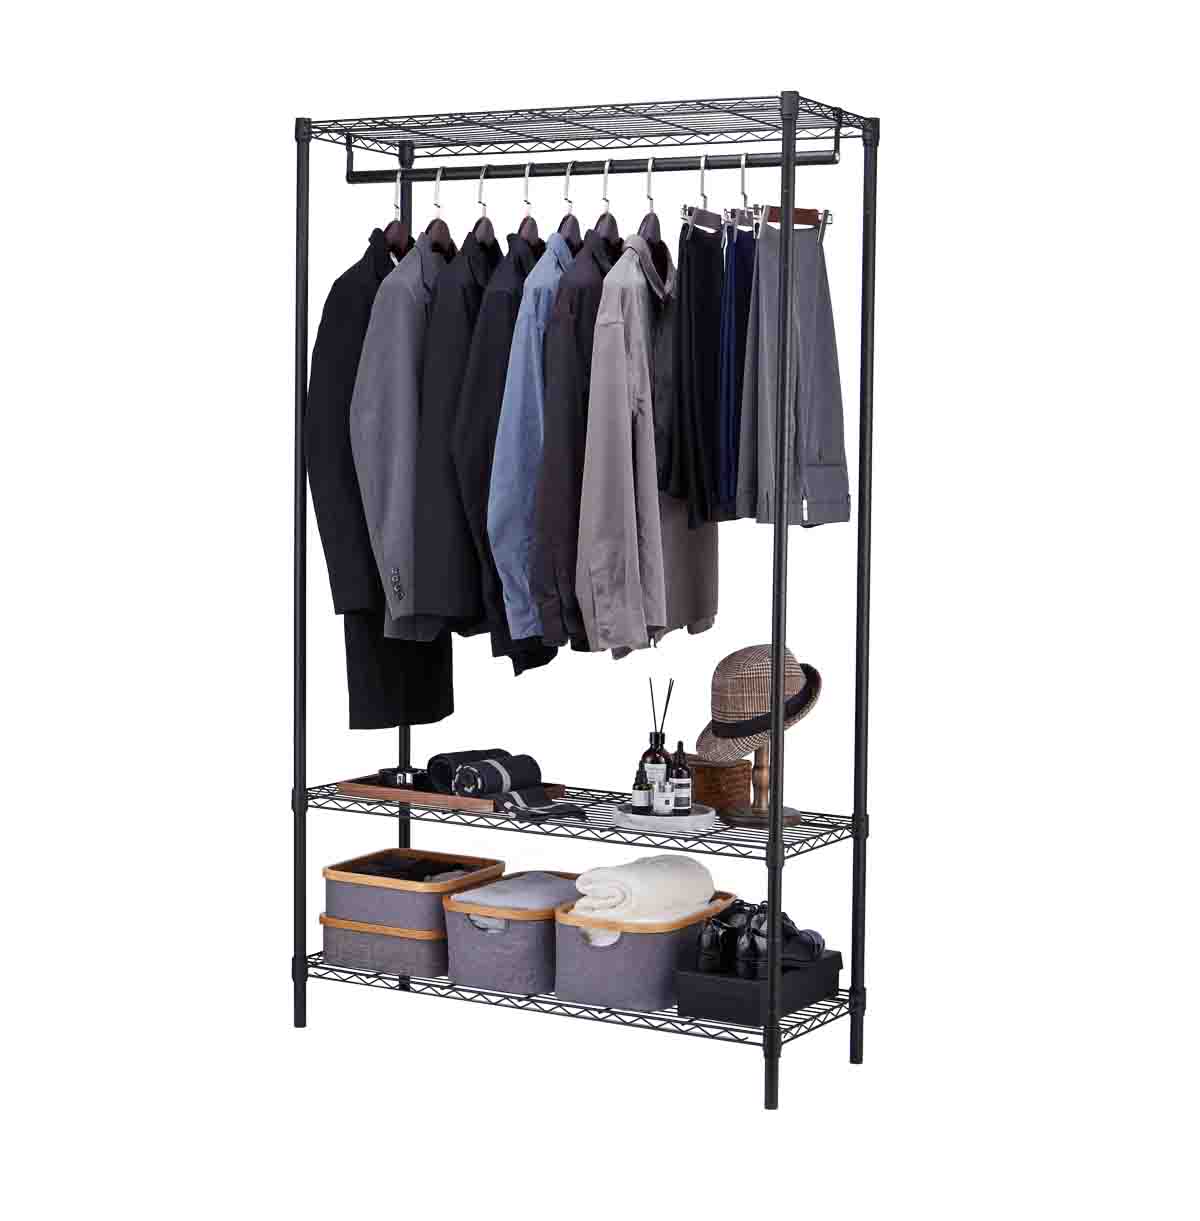 3 Tier Wire Closet Shelf Organizer With Hanging Rod / Freestanding Open Wardrobe Organizer